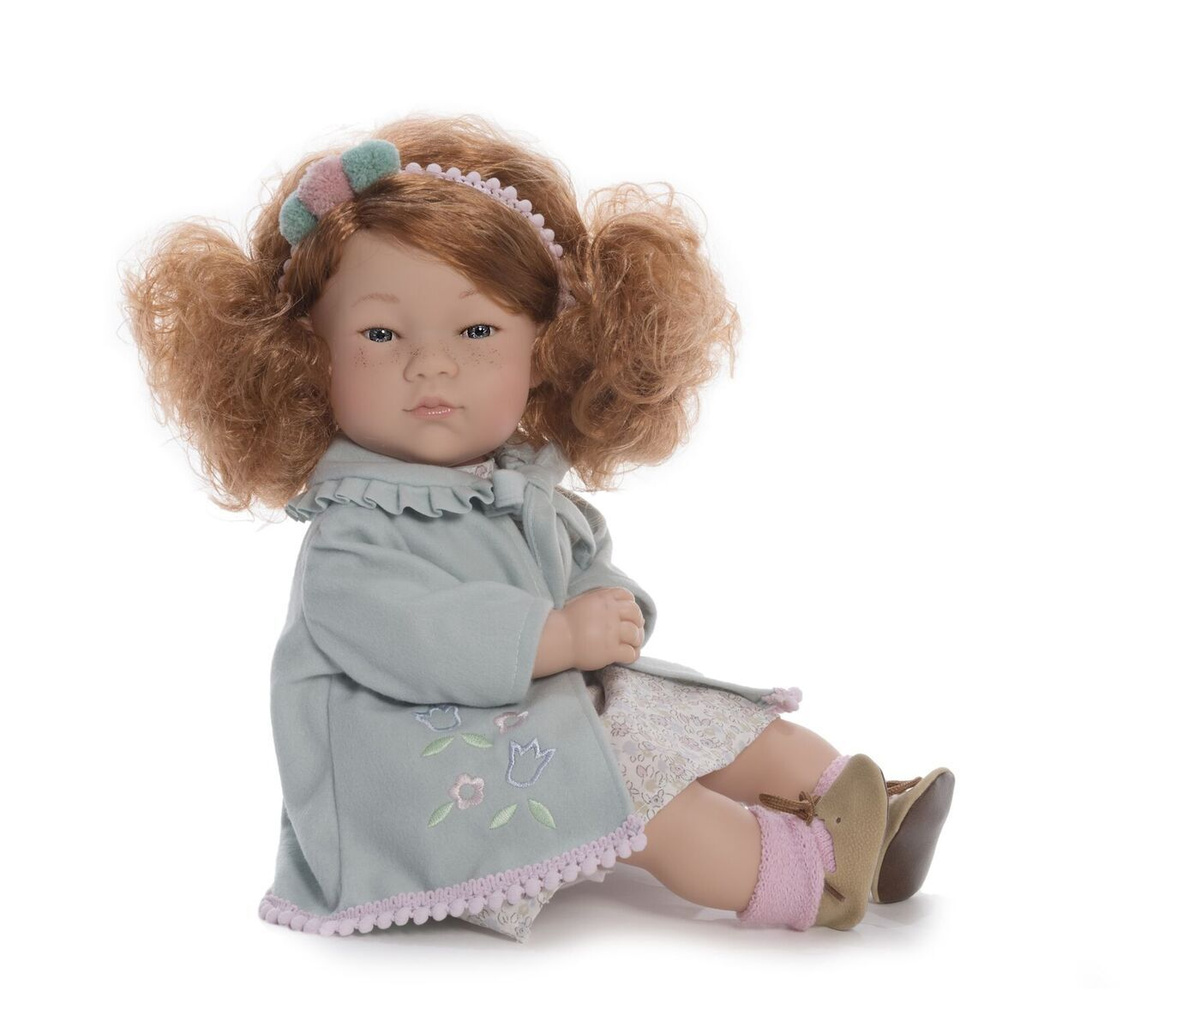 Купить Куклу Большую В Интернет Магазине